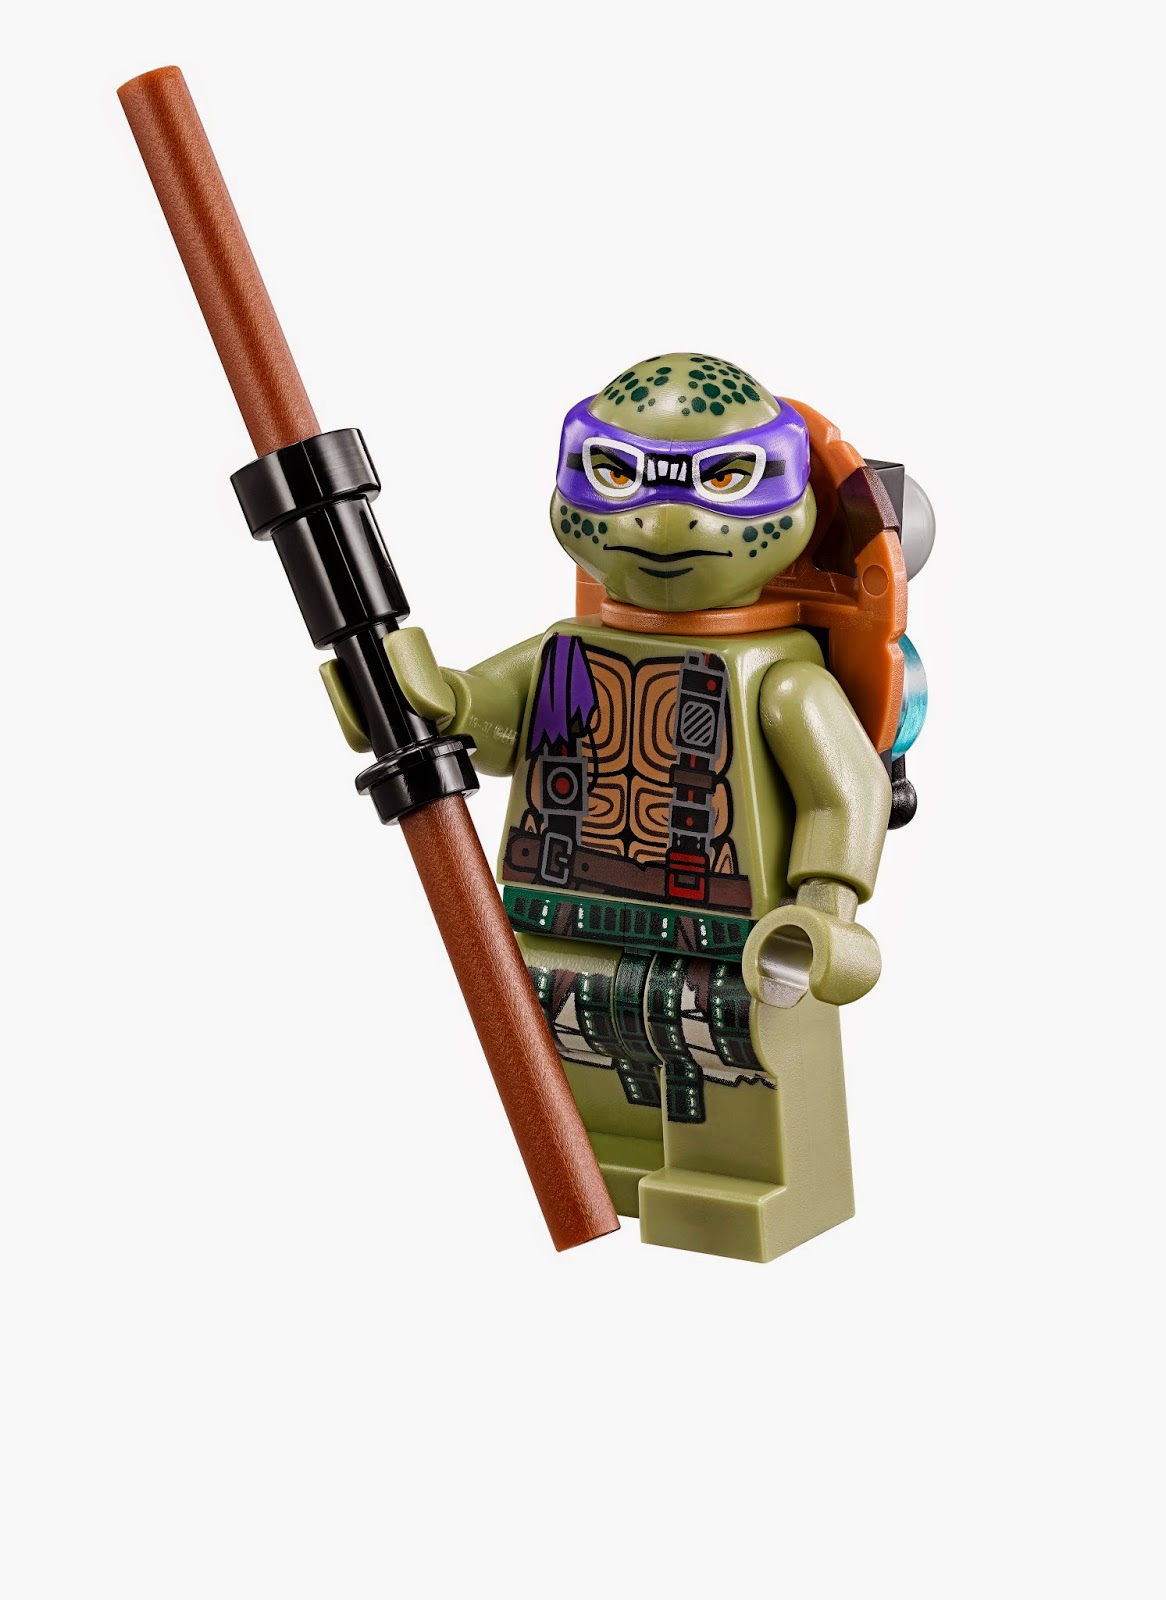 NickALive! LEGO Releases New "Teenage Mutant Ninja Turtles" Movie Sets